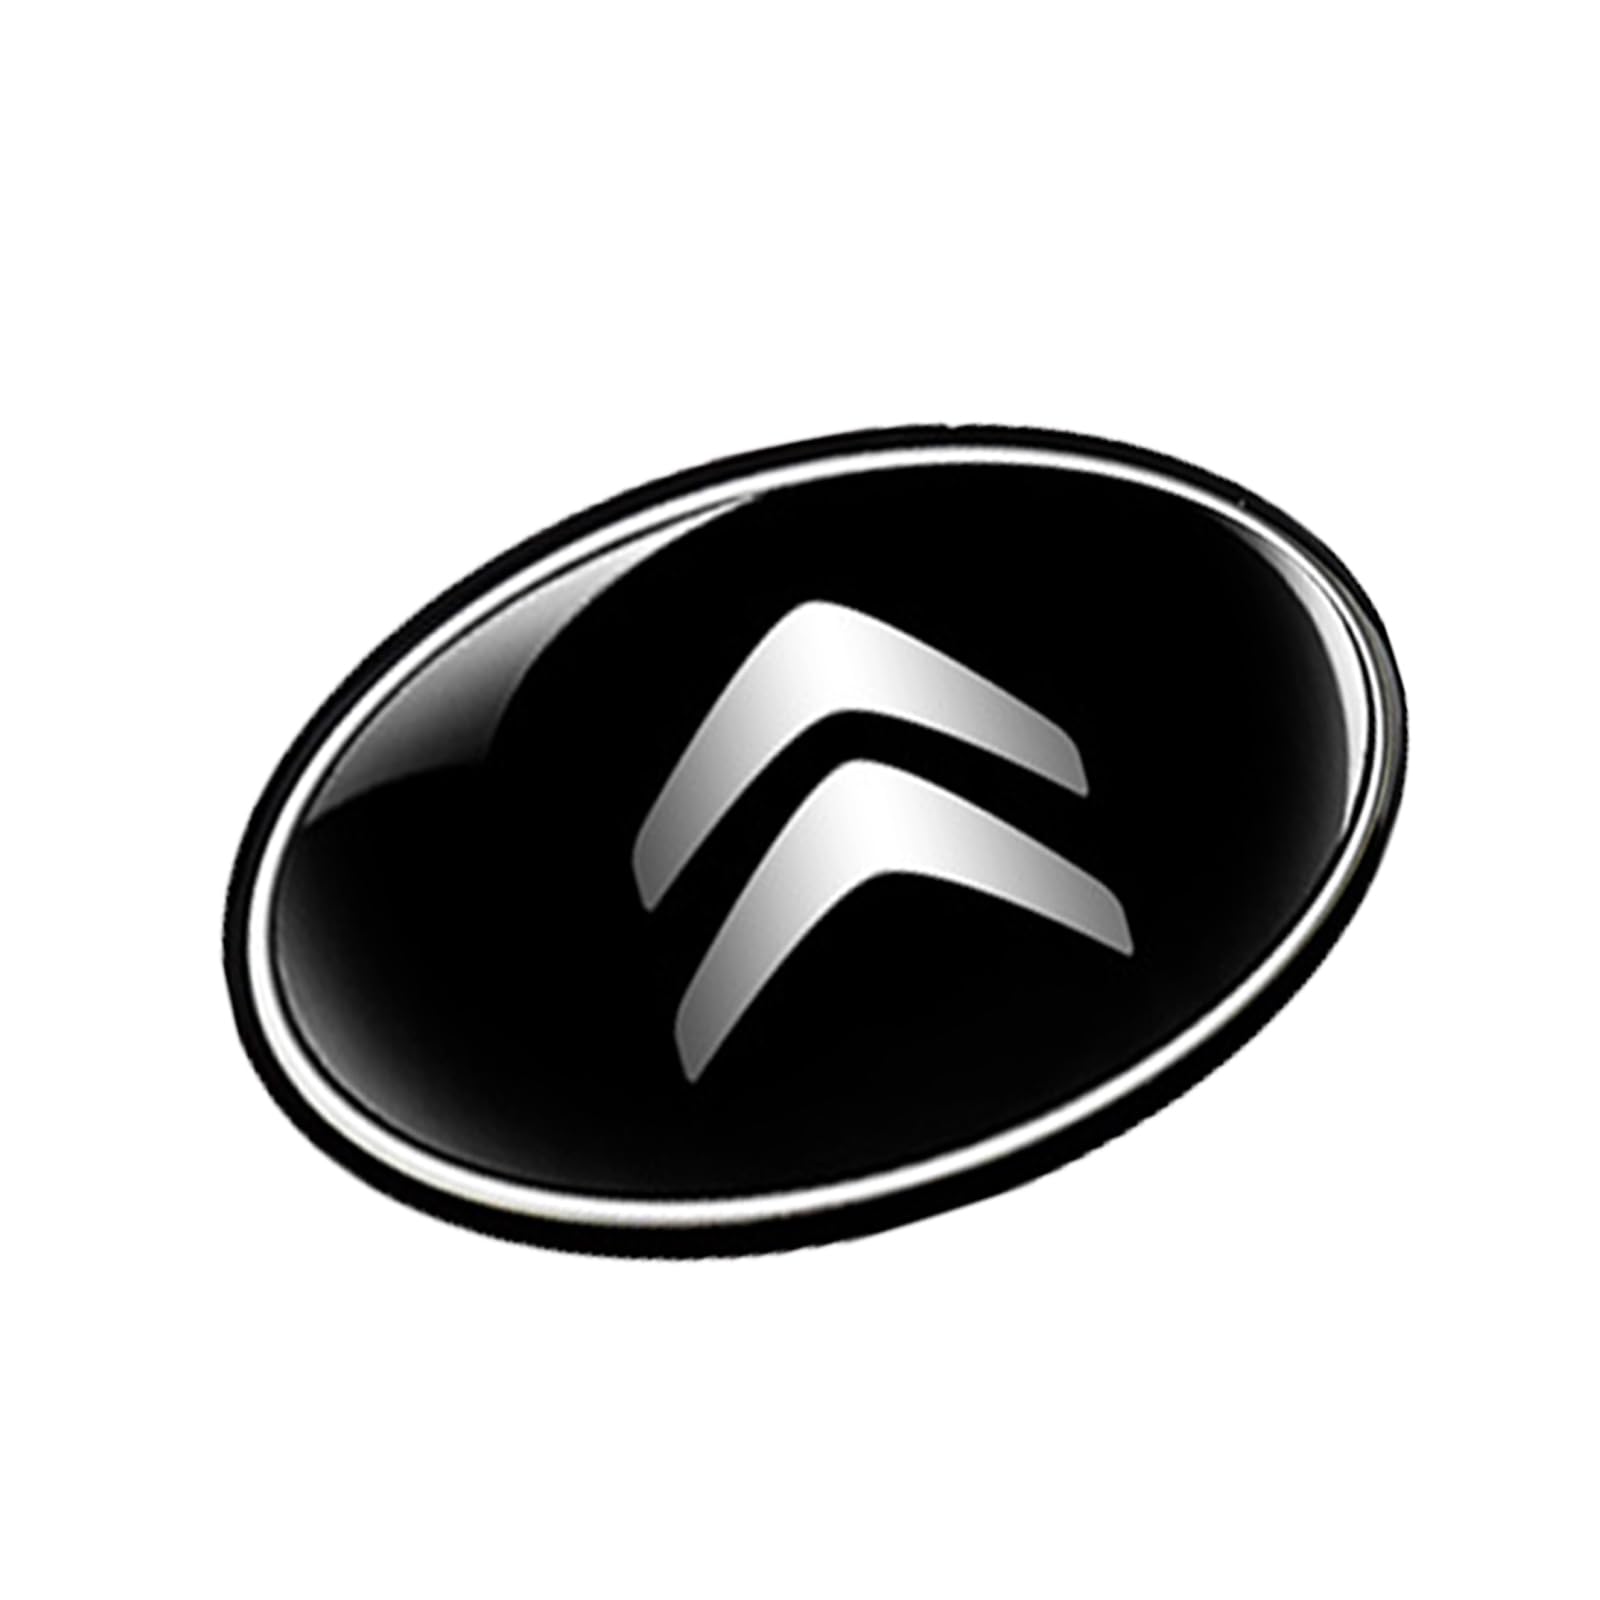 Abzeichen Logo für Citroen C3-XR Elysee C4L Versailles C5 X, Buchstaben Wort Emblem-Aufkleber,Autoaufkleber Sticker Emblem,Auto Emblem Abziehbilder Styling Dekoratives Emblem von DURAGS